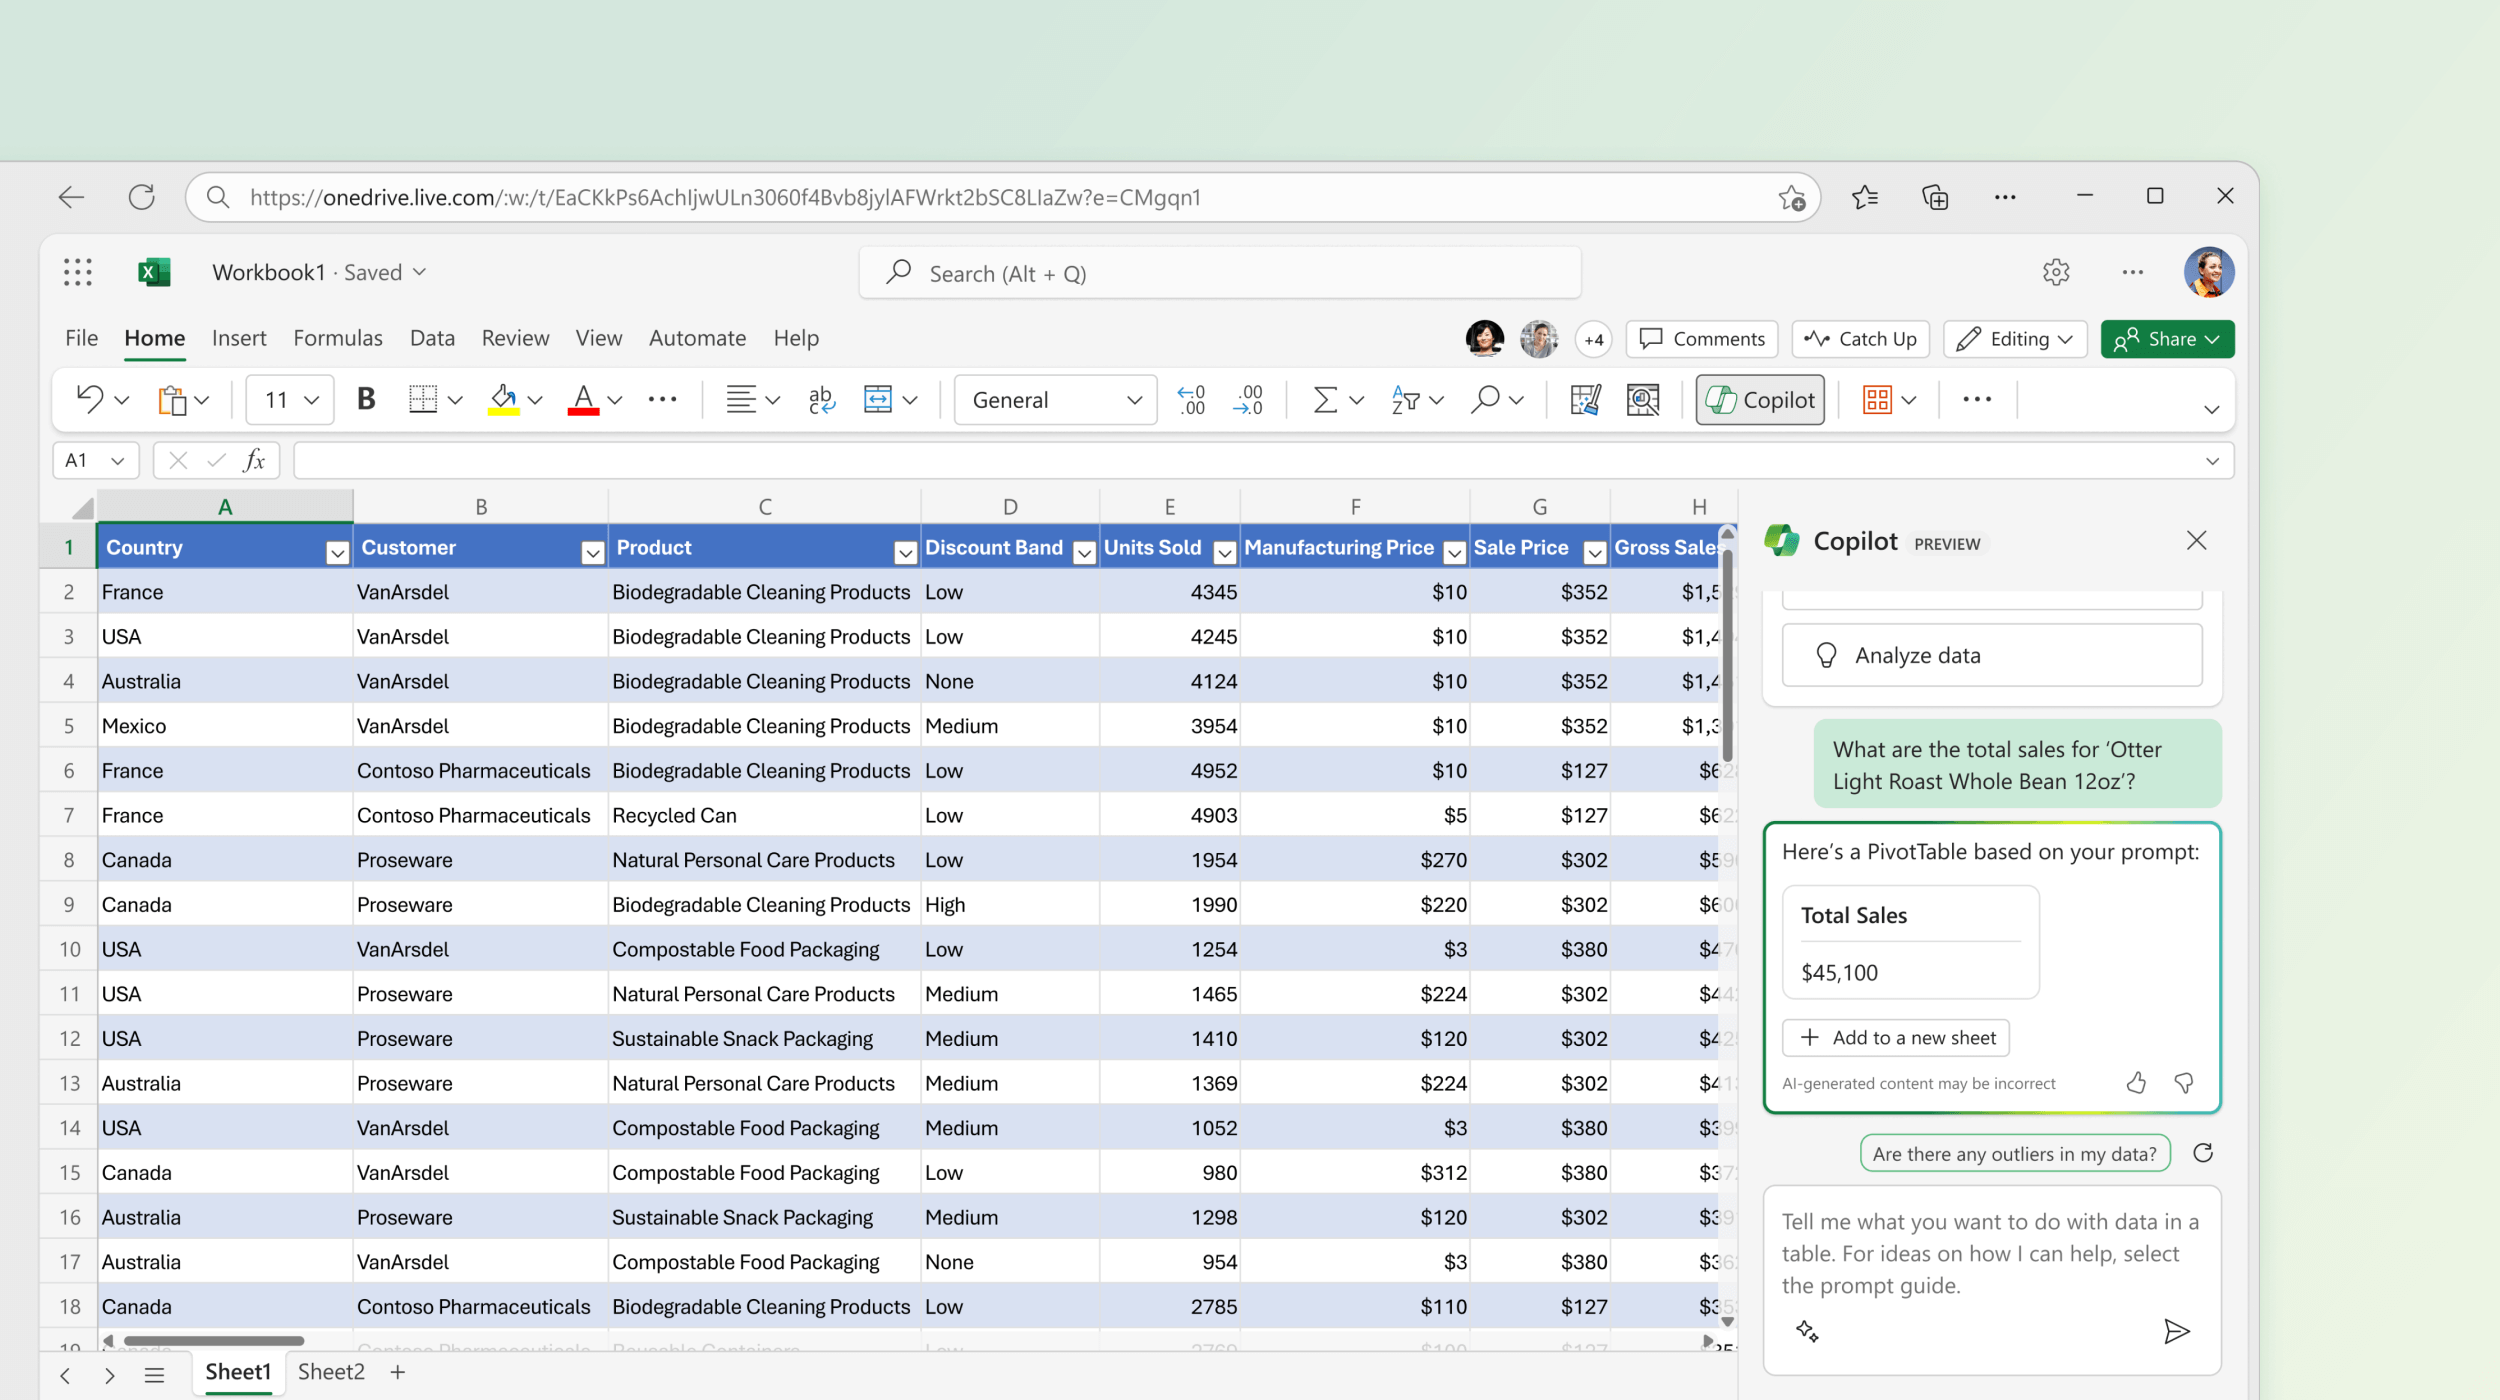 Ekrano kopijoje pavaizduota "Excel" kopija, kurioje siūloma "PivotTable" pagal esamus duomenis.